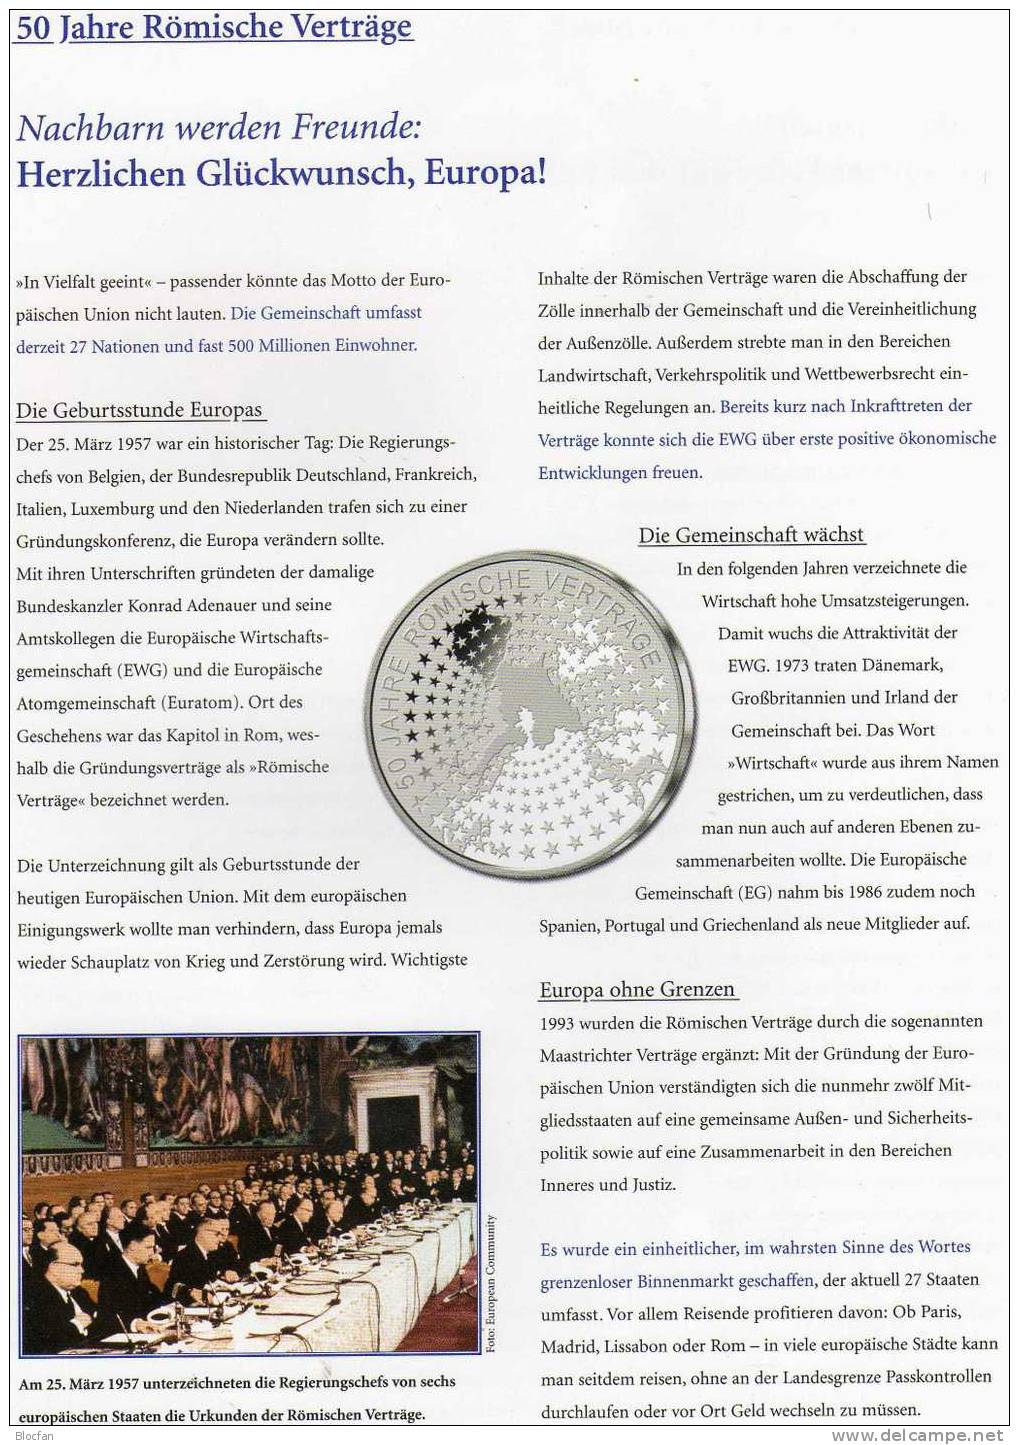 Römische Verträge Numisblatt 2/2007 F Deutschland 2593+ 10-KB SST 27€ Verträge Rom EWG EURATOM coins document of Germany